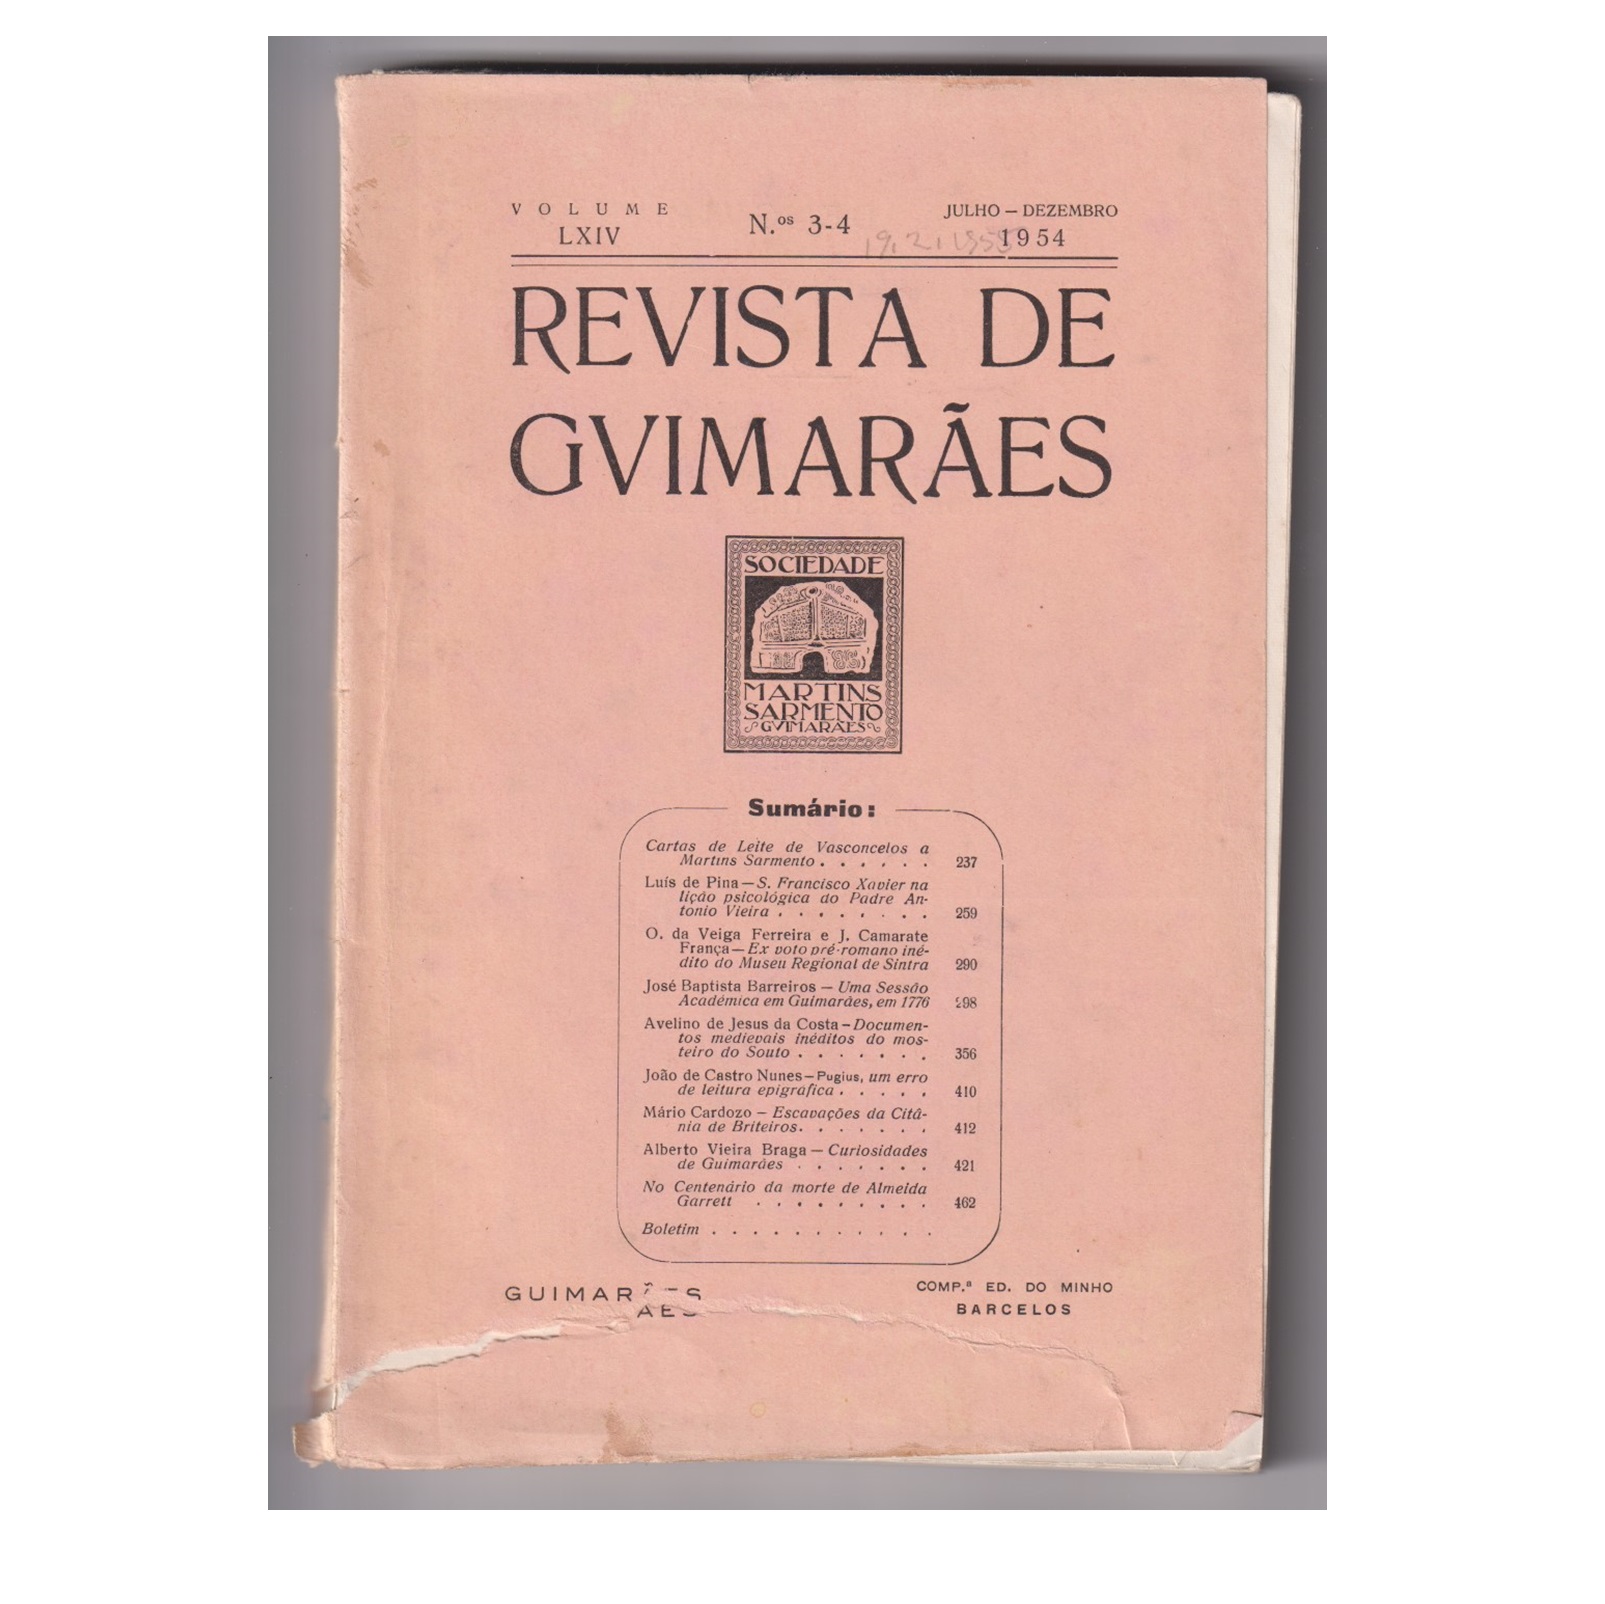 REVISTA DE GUIMARÃES. VOL. LXIV. N.º 3-4, 1954